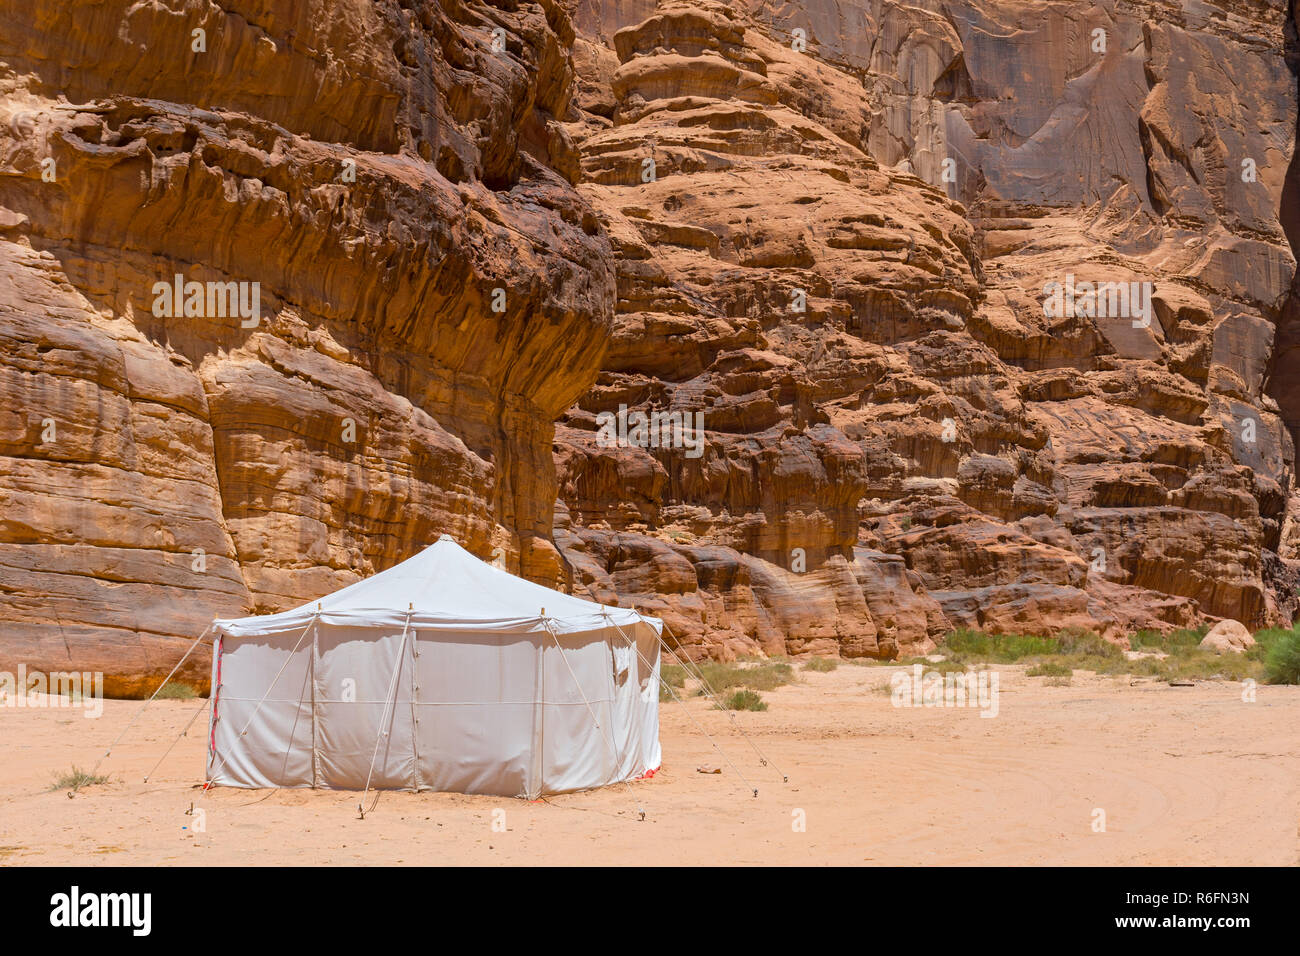 Berber Tent In The Wadi Rum Desert, Jordan Stock Photo